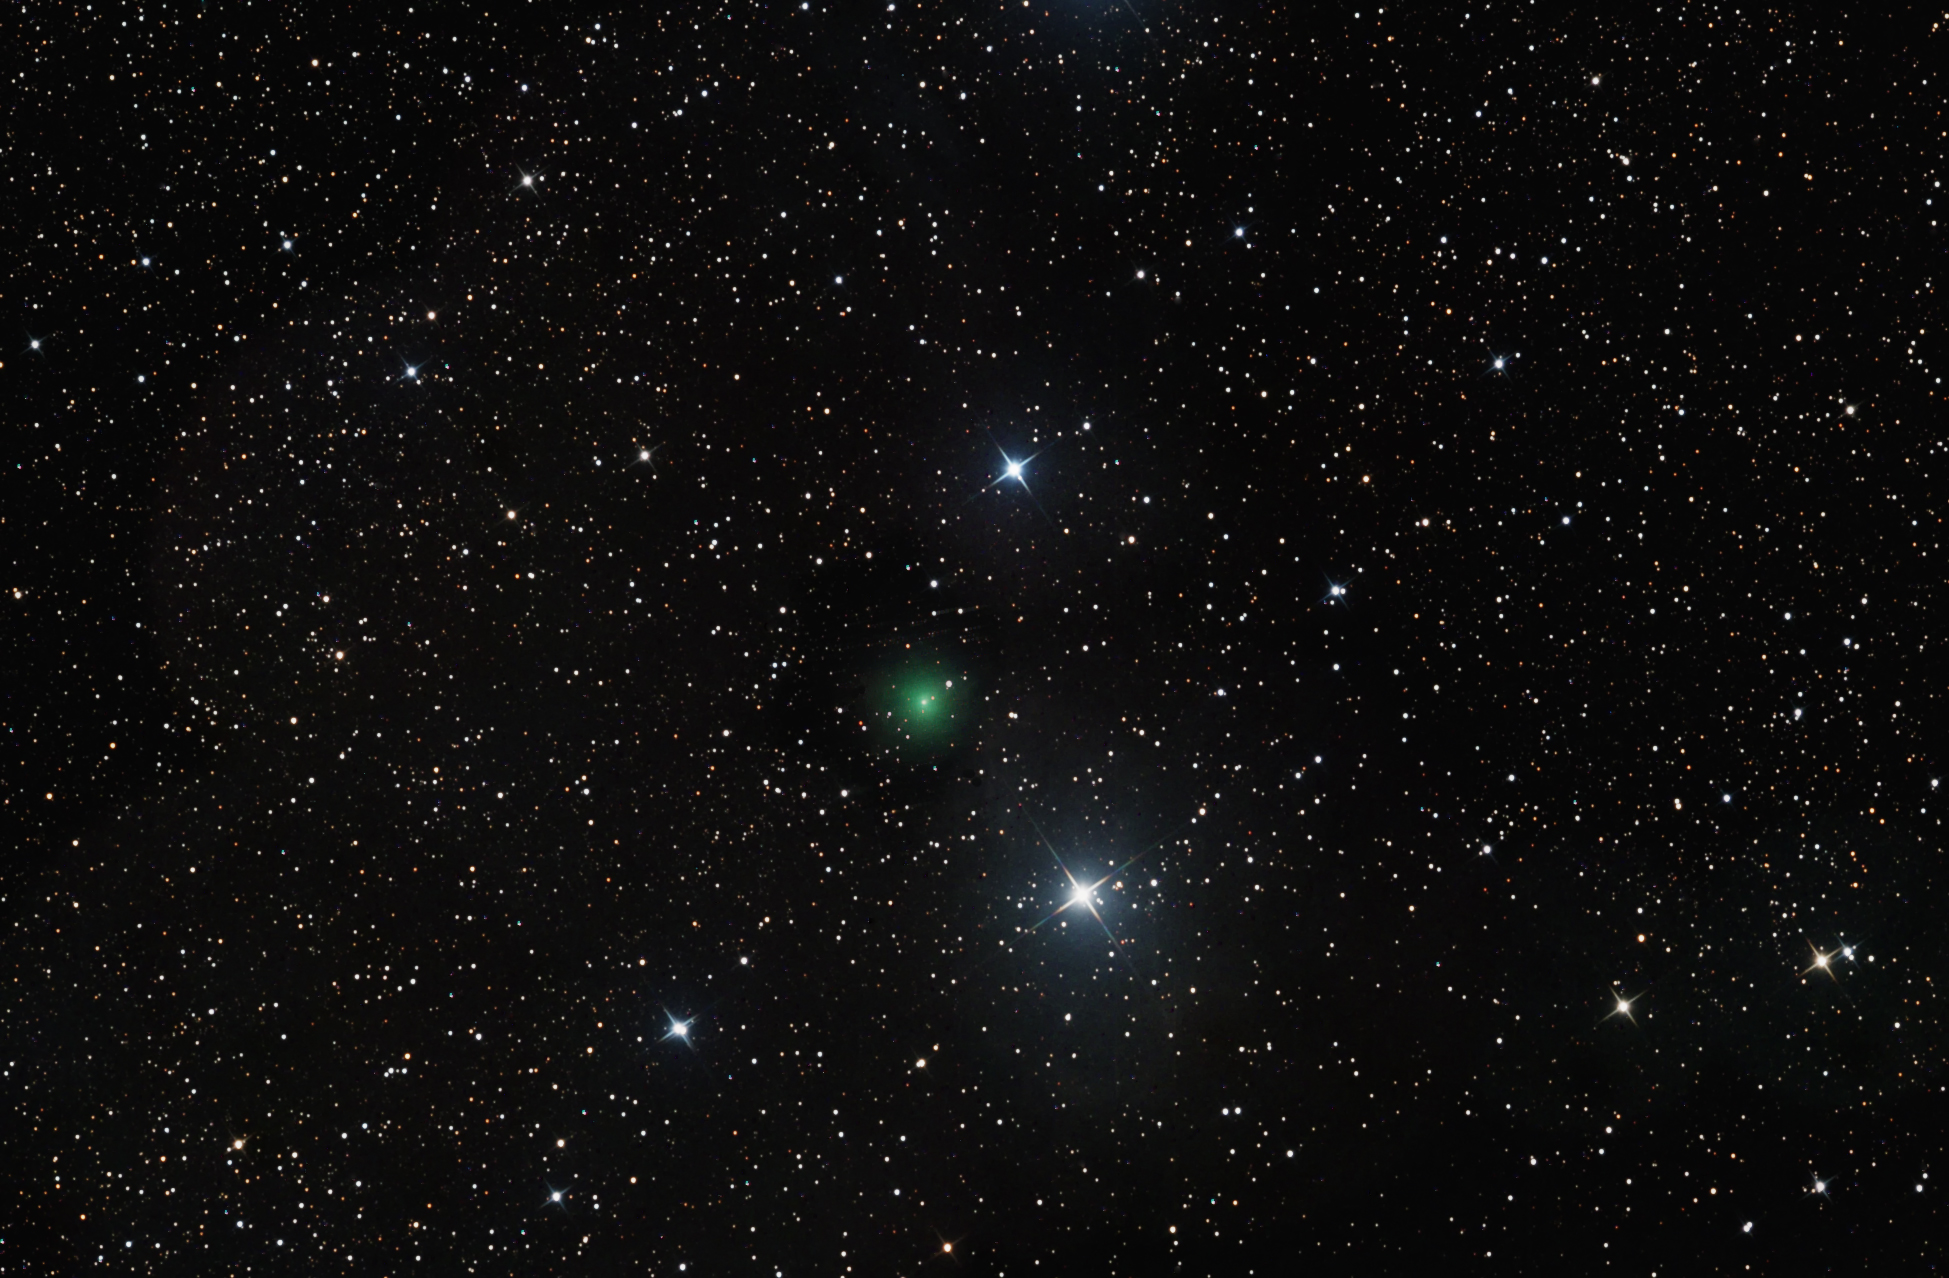 Comet c2017 S3 PanSTARRS